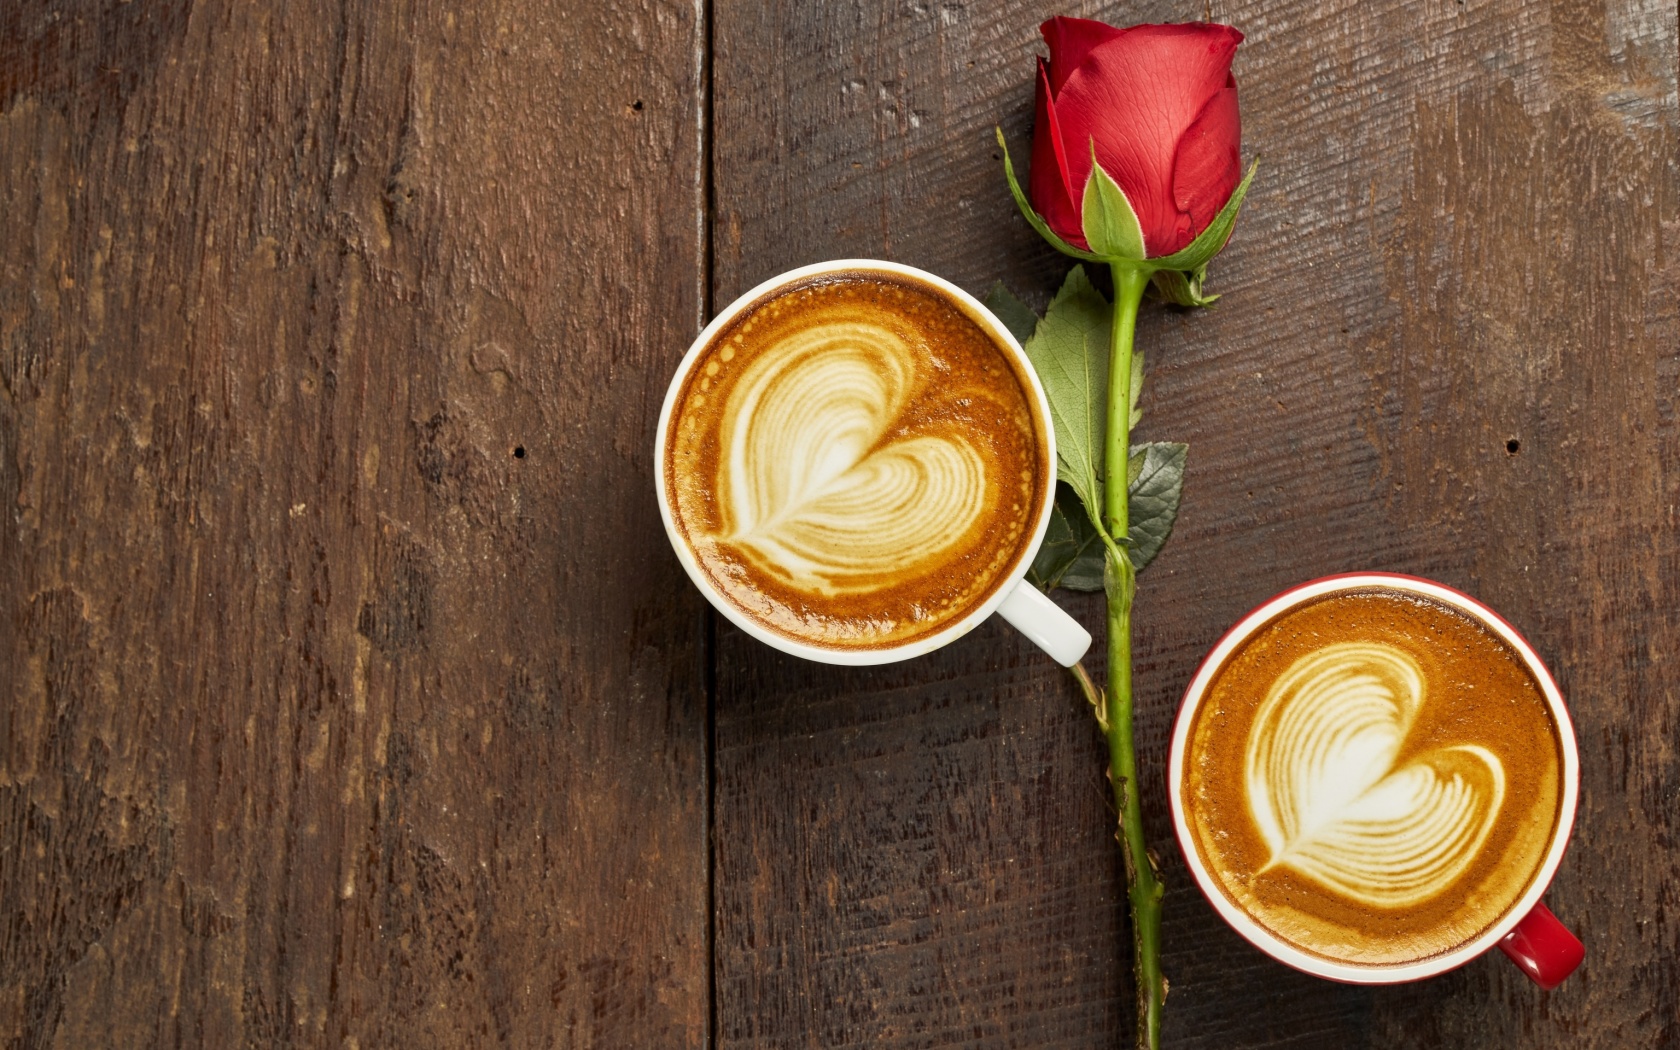 Обои Romantic Coffee and Rose 1680x1050